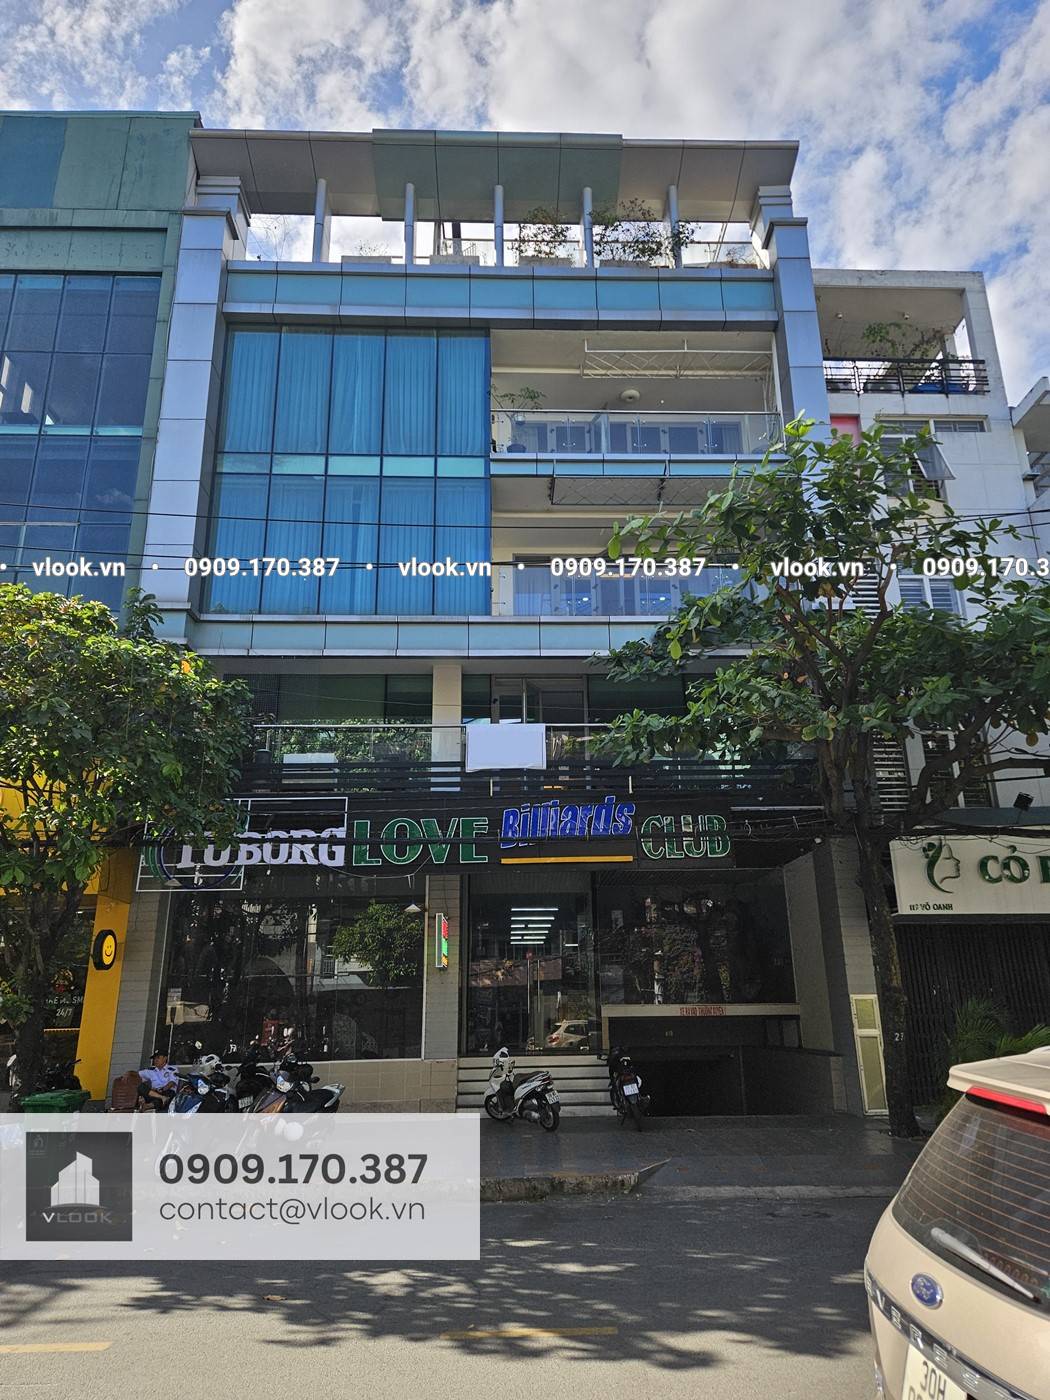 Cao ốc văn phòng cho thuê Tòa nhà TNL, 115-117 Võ Oanh, Phường 25, Quận Bình Thạnh, TPHCM - vlook.vn - 0909 170 387